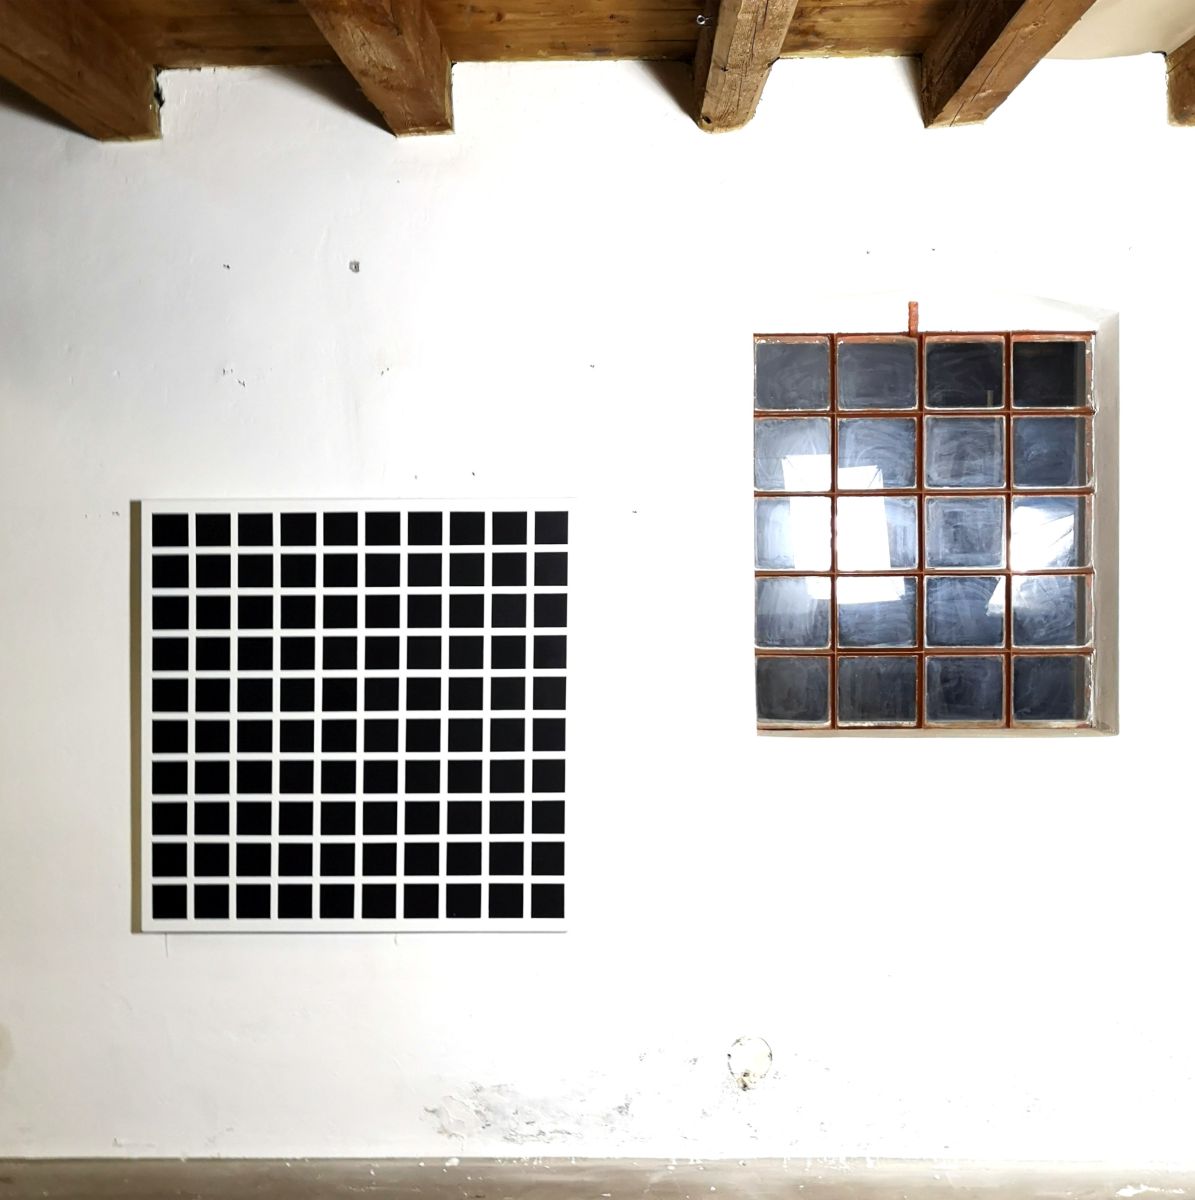 black squares on white ground-christian eder-artworks-paintings-studioshot